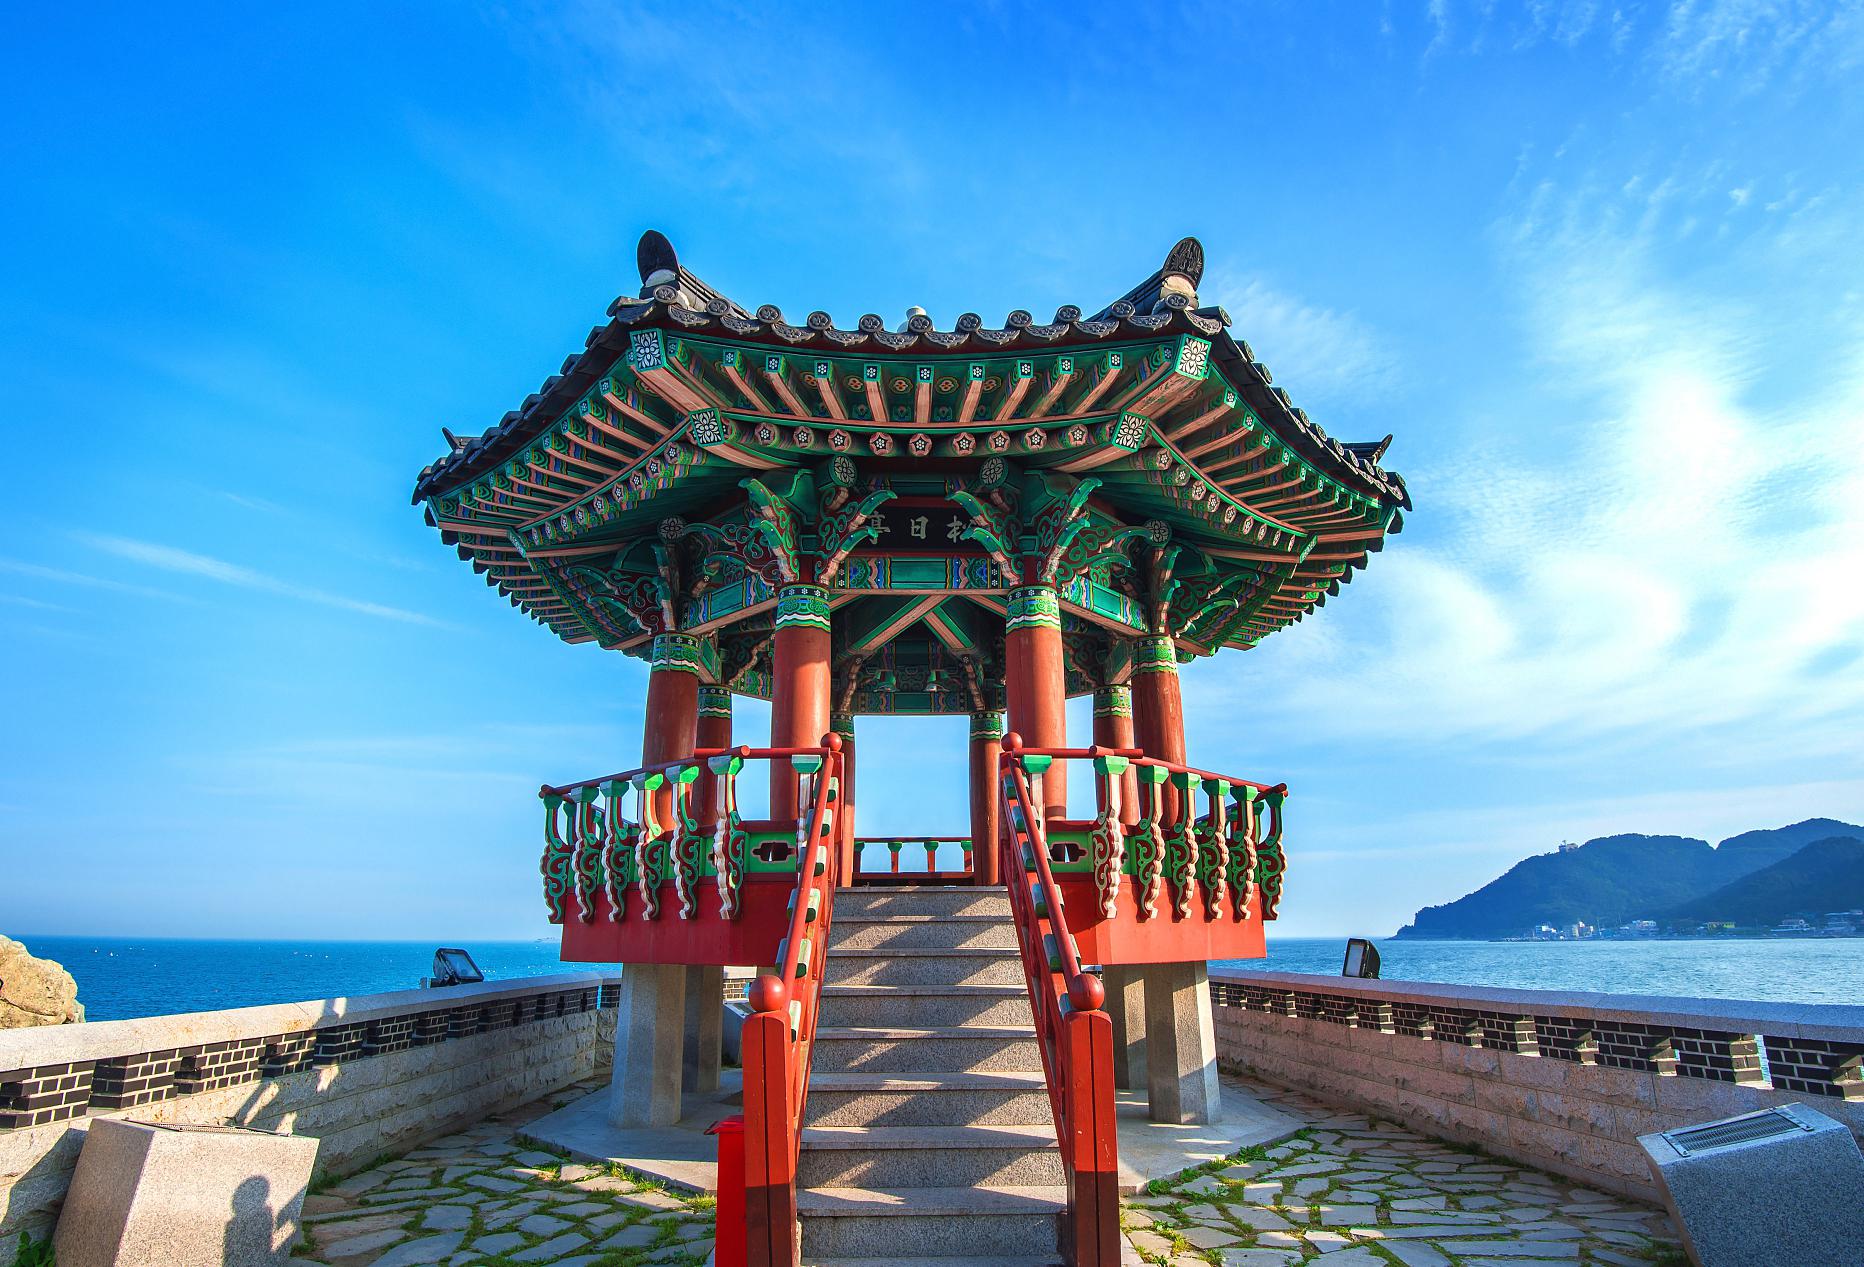 蓬莱阁的历史,传说,建筑和景观 蓬莱阁位于中国山东省烟台市,是一座